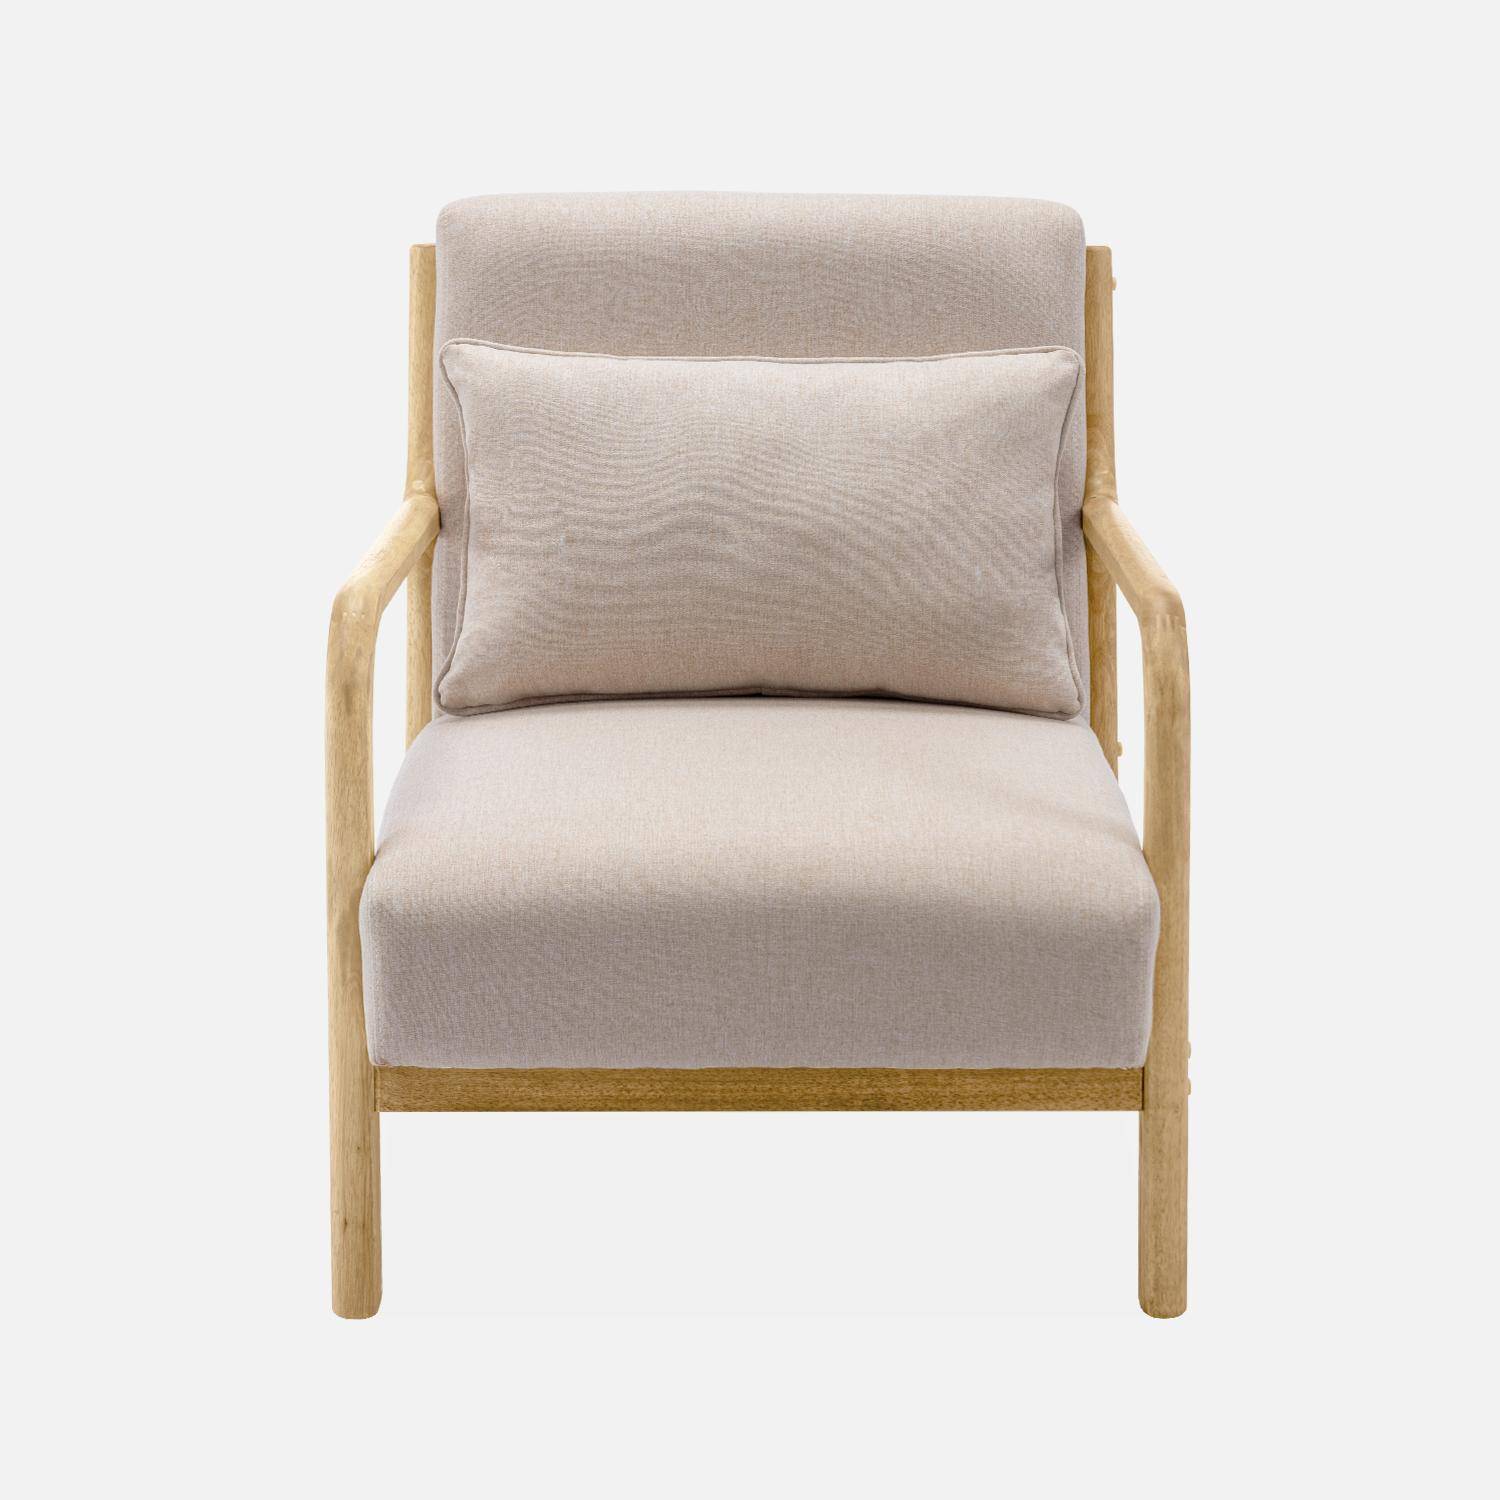 Poltrona de design em madeira e tecido, 1 assento reto fixo, pernas em bússola escandinavas, estrutura em madeira maciça, assento bege confortável,sweeek,Photo5